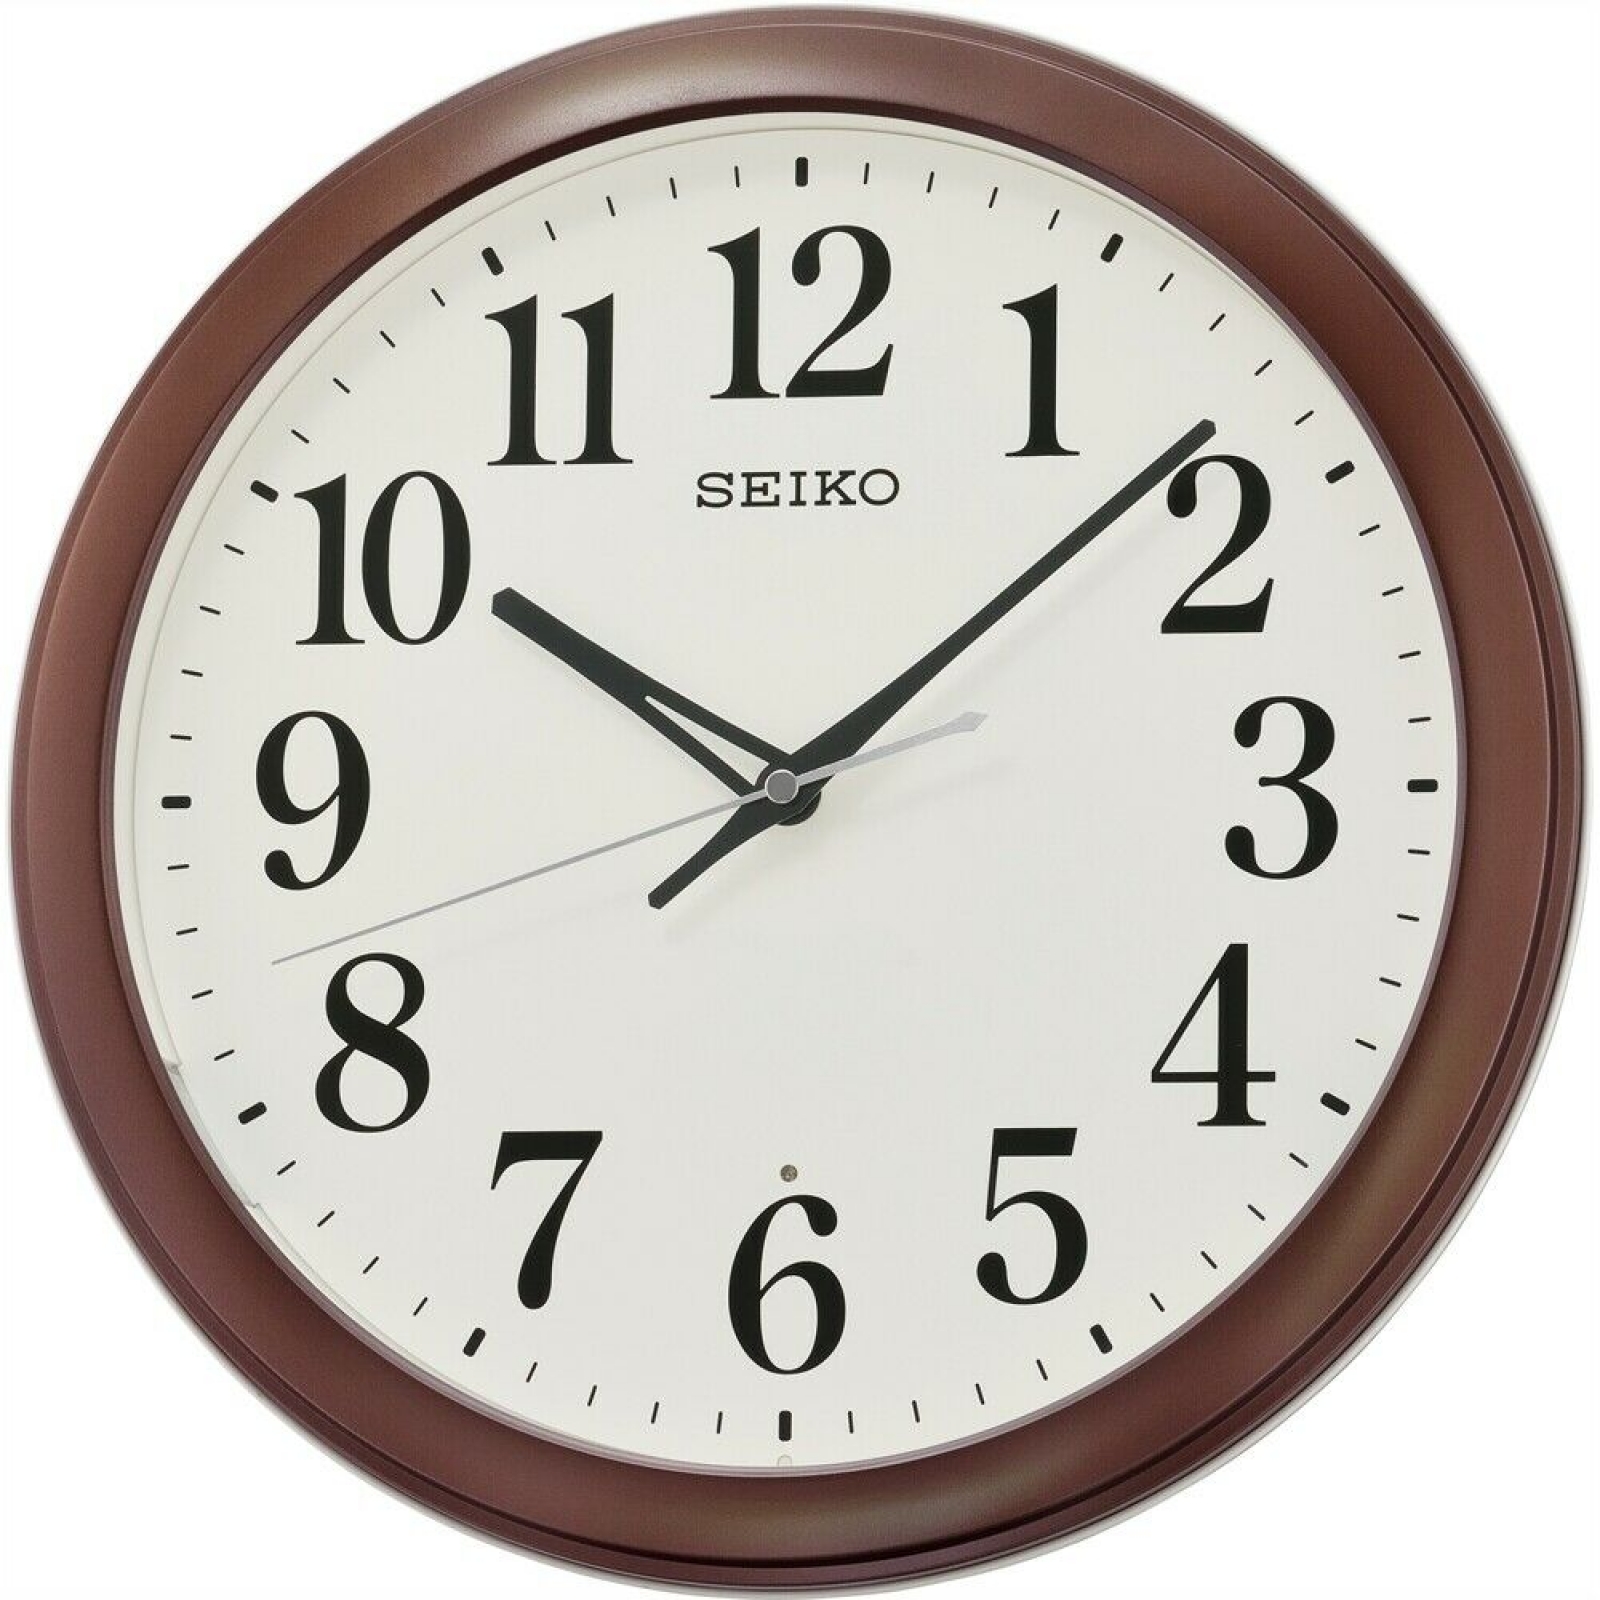 Настенные часы японские. Rhythm cmh726nr06. Настенные часы Seiko qxa528bn. Настенные часы Seiko qxa525kn. Настенные часы Seiko qxa155b.